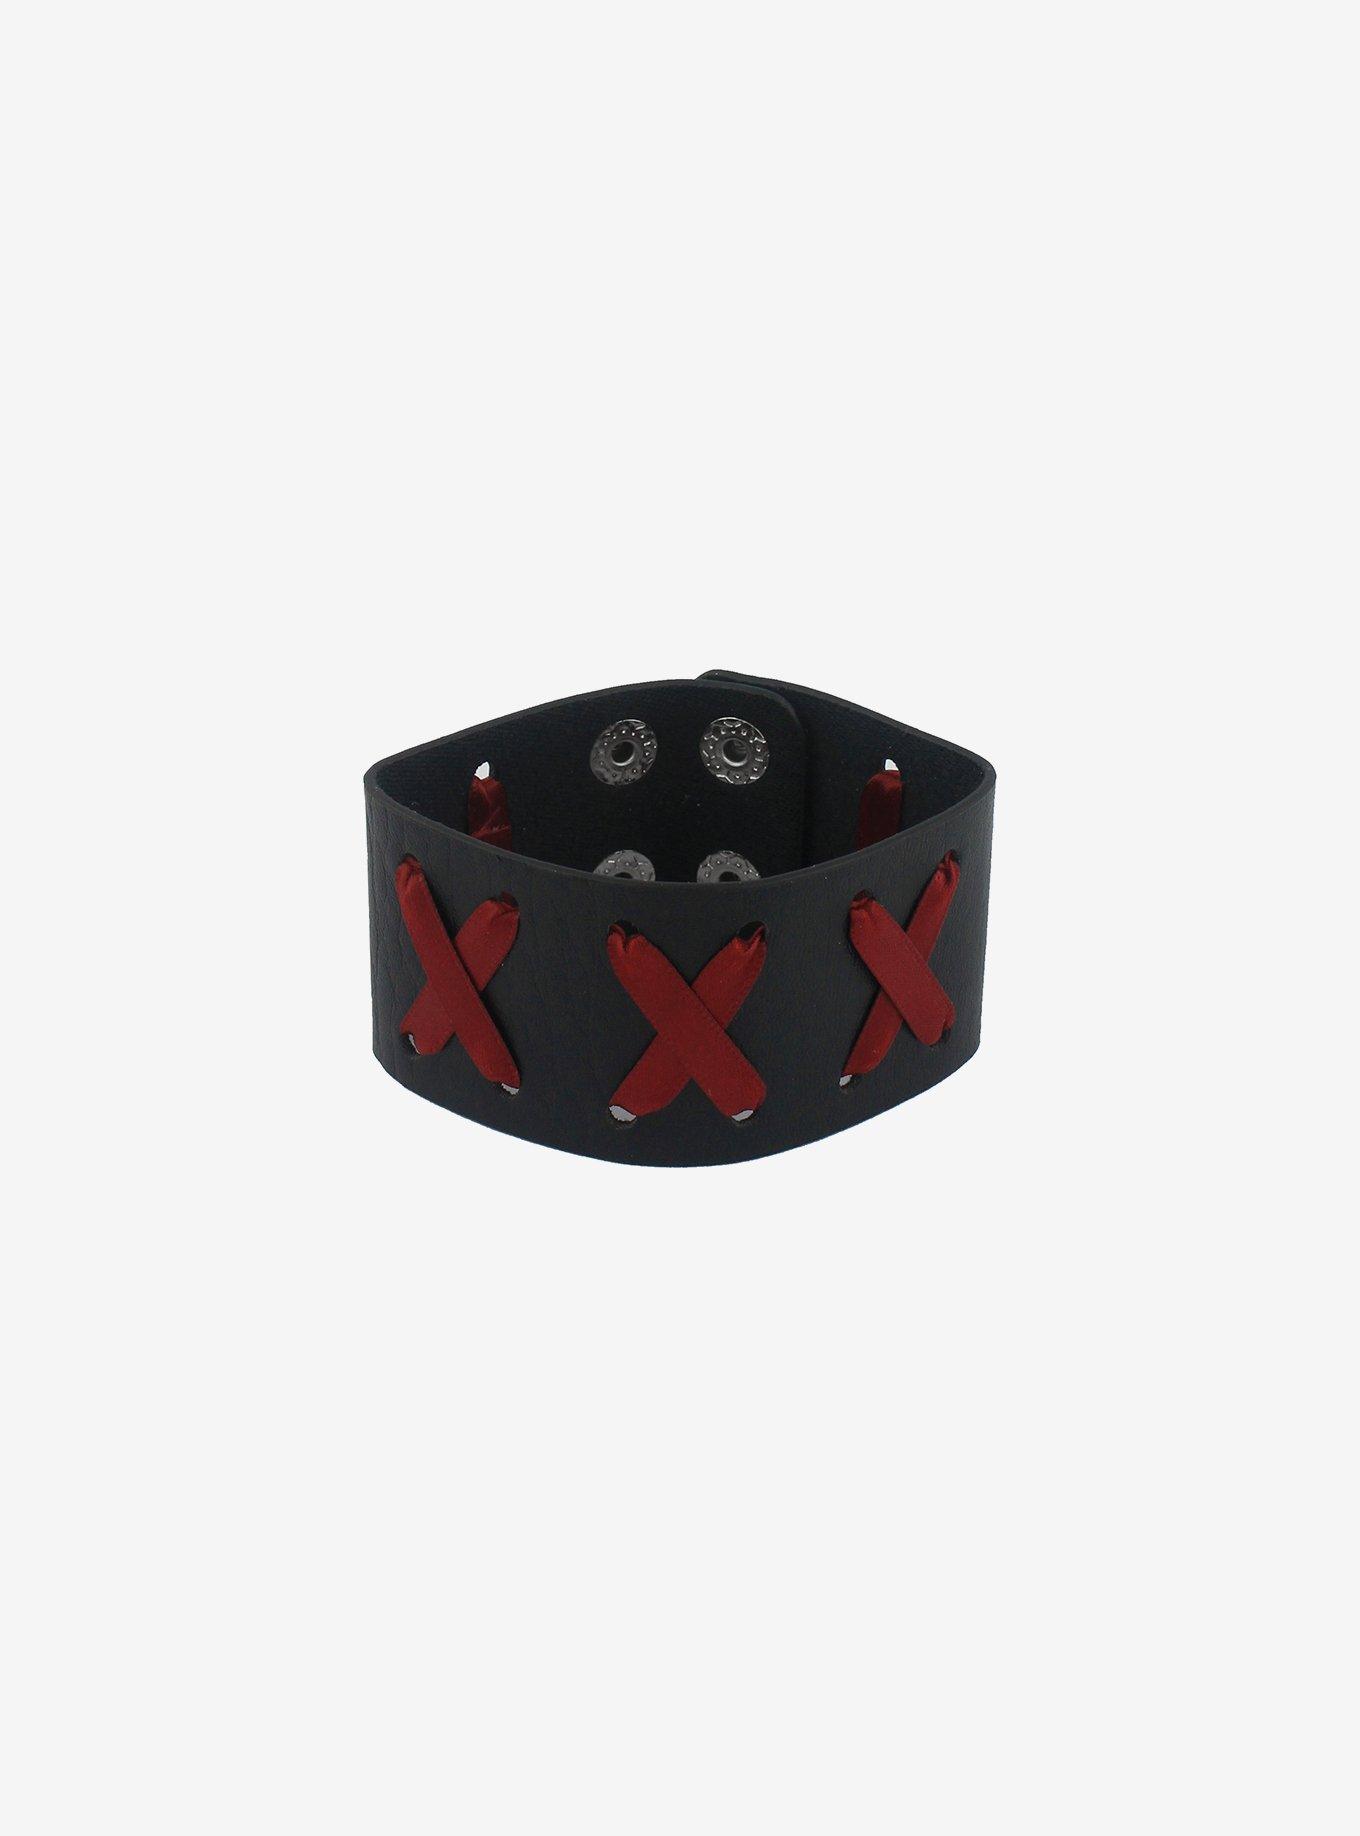 Black & Red Cross-Stitch Cuff Bracelet, , alternate